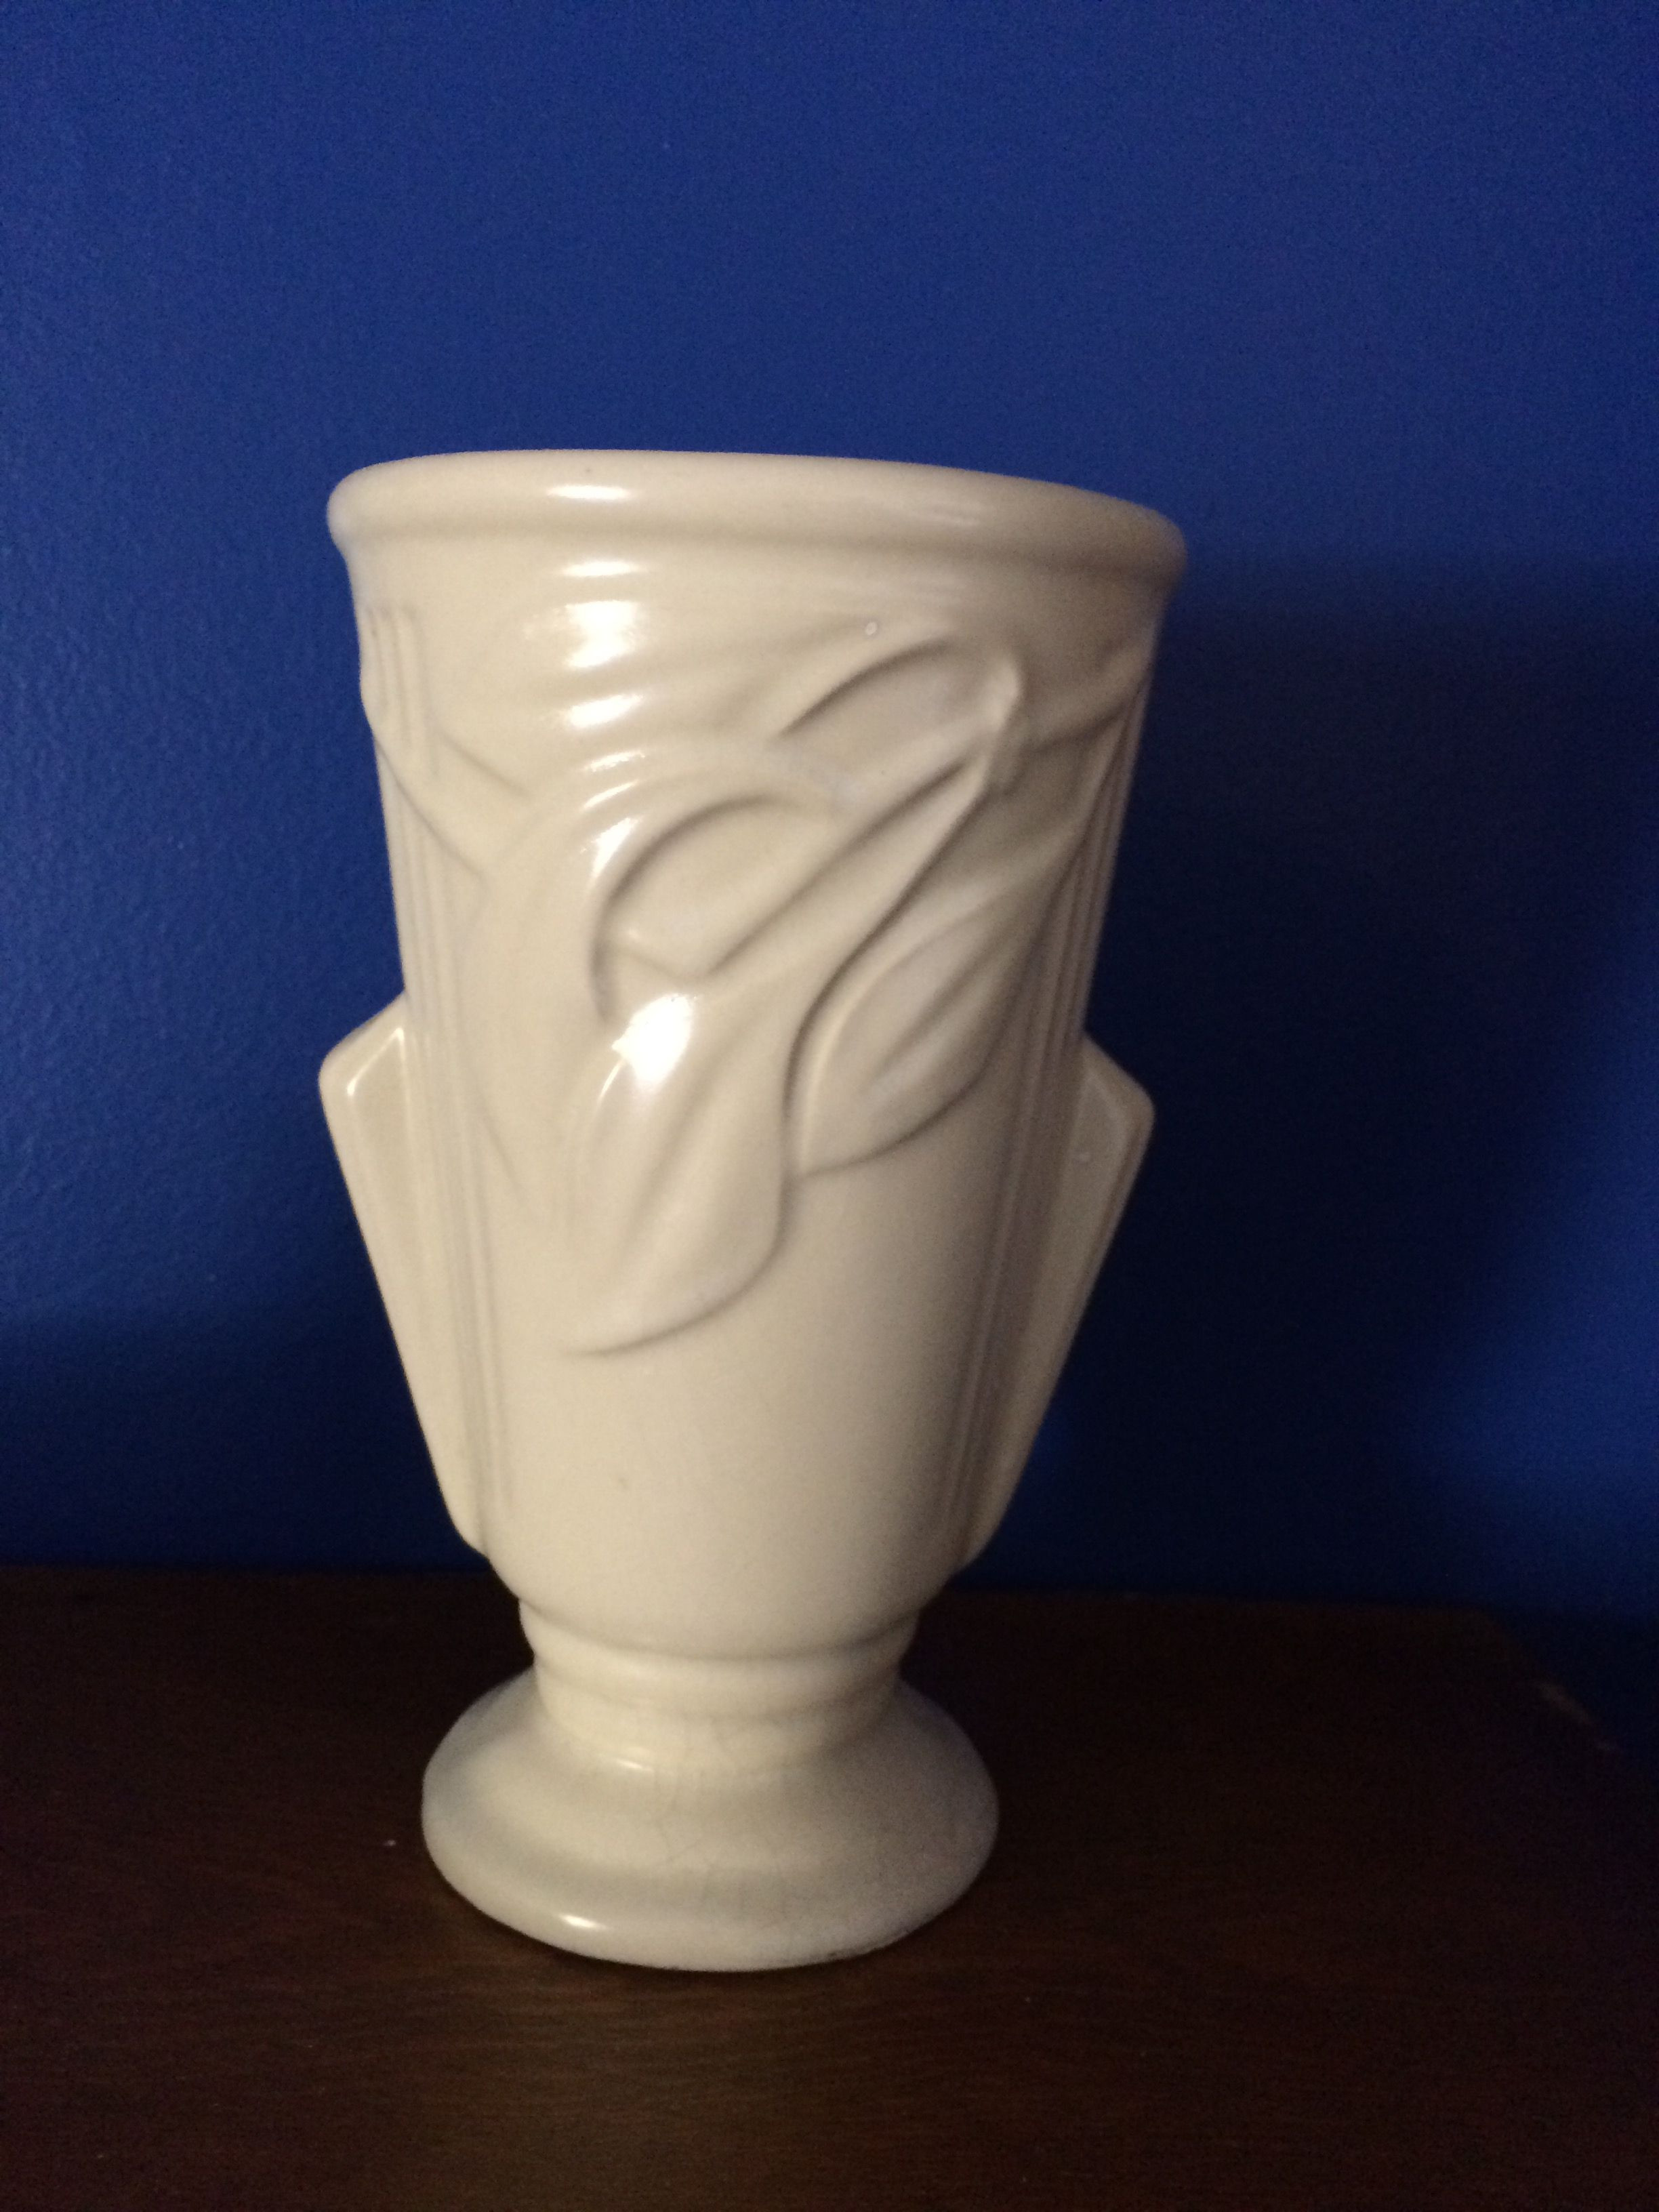 Chinese Porcelain Vases for Sale Of White Vases for Sale Elegant Pin by Eugene Hollon On Art Deco White with White Vases for Sale Elegant Pin by Eugene Hollon On Art Deco White Vases Pinterest